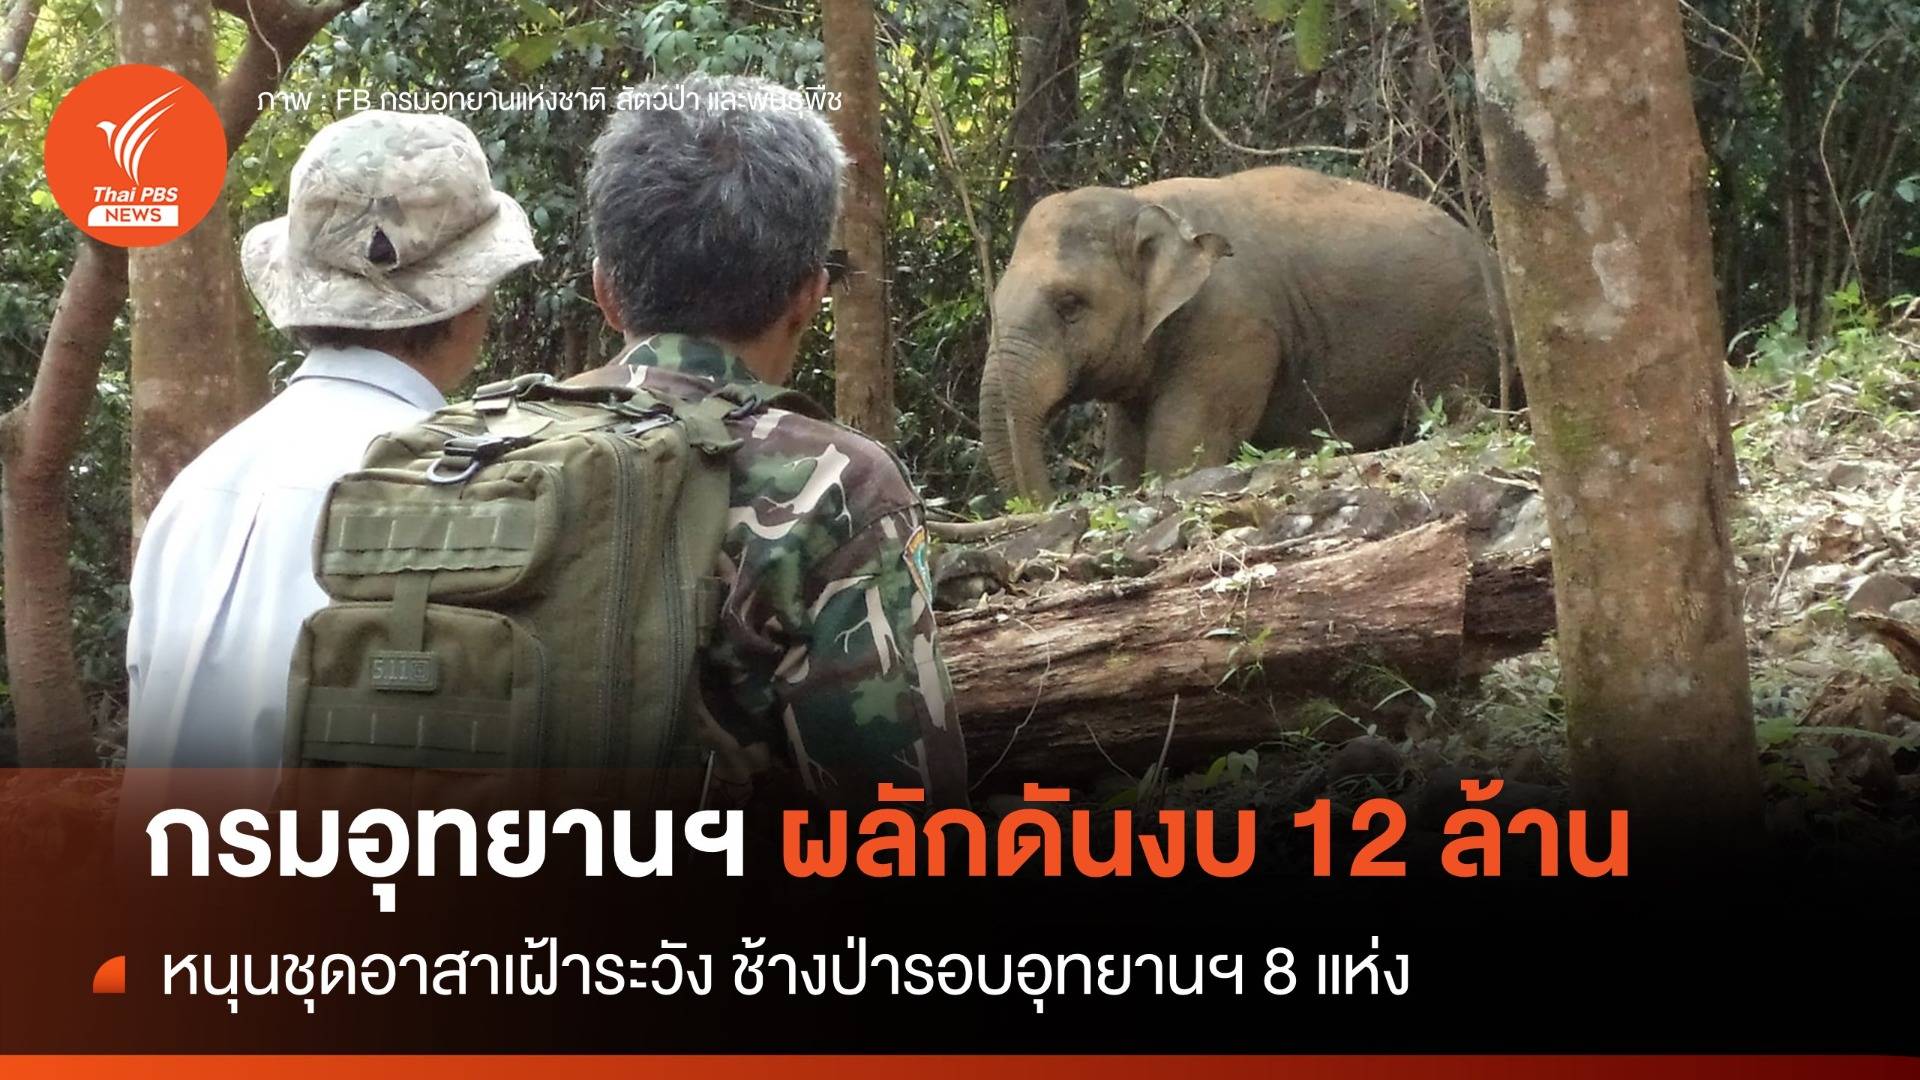 กรมอุทยานฯ เตรียมดันงบ 12 ล้านบาท หนุนชุดอาสาเฝ้าฯ ช้างป่ารอบอุทยาน 8 แห่ง 